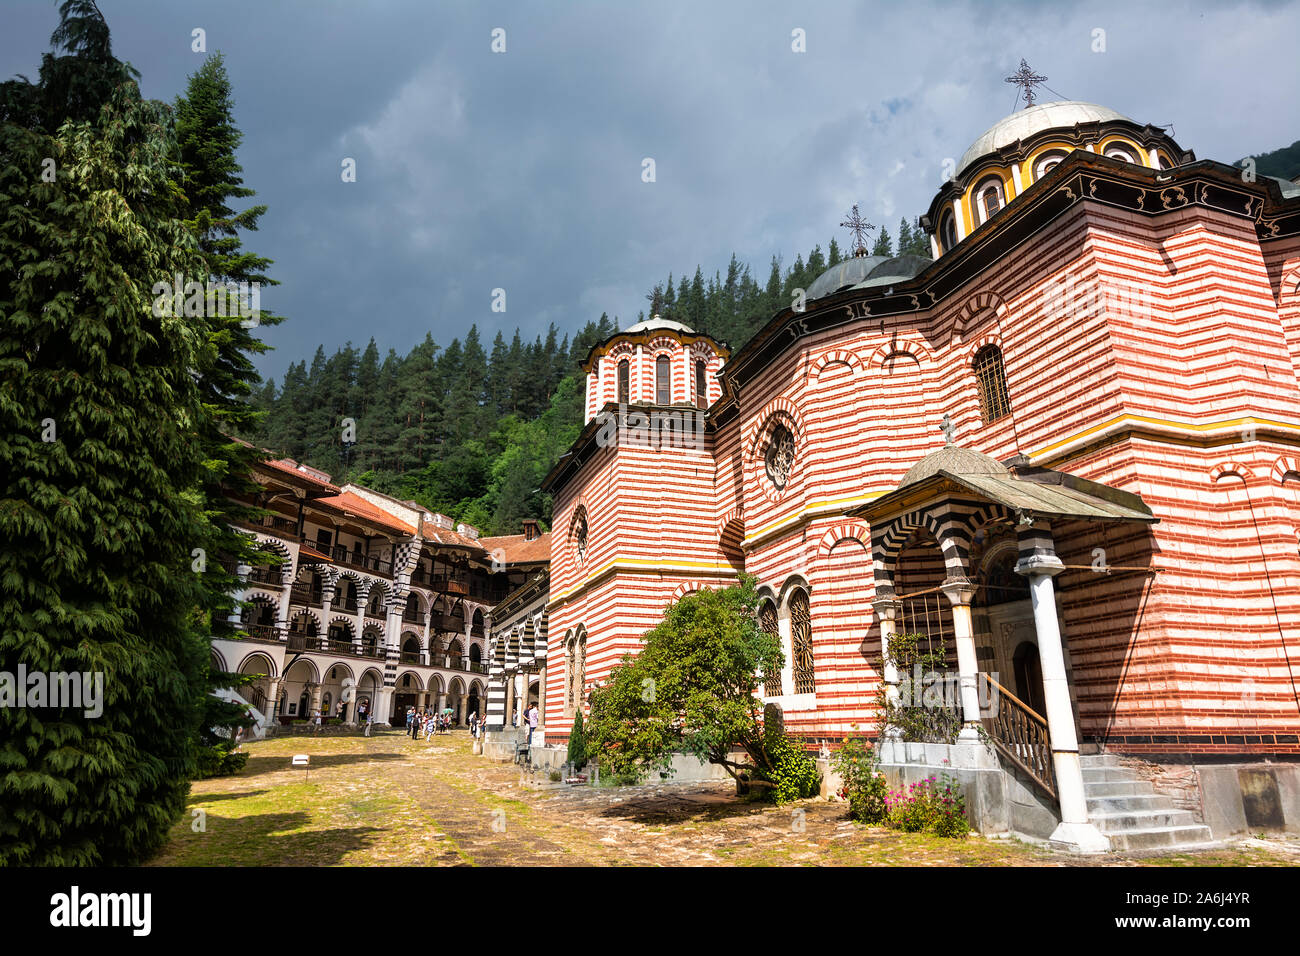 La Bulgarie, Rila - le 23 juin 2019 : Le Monastère de Rila, l'une des principales destinations touristiques et site de l'UNESCO en Bulgarie Banque D'Images